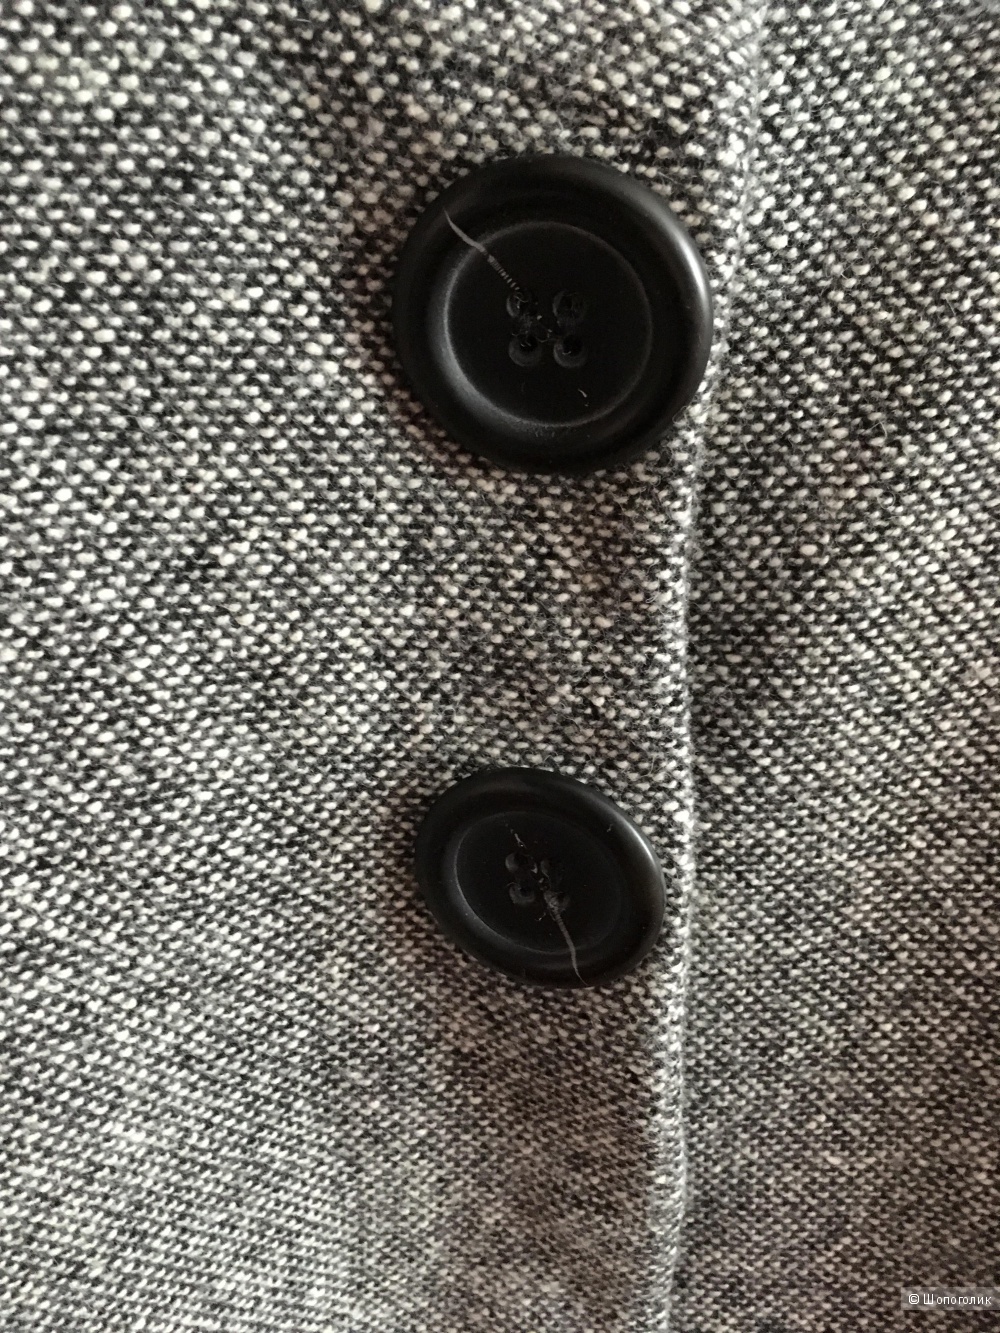 Пиджак с кашемиром Gerard Darrel, 48-50 размер